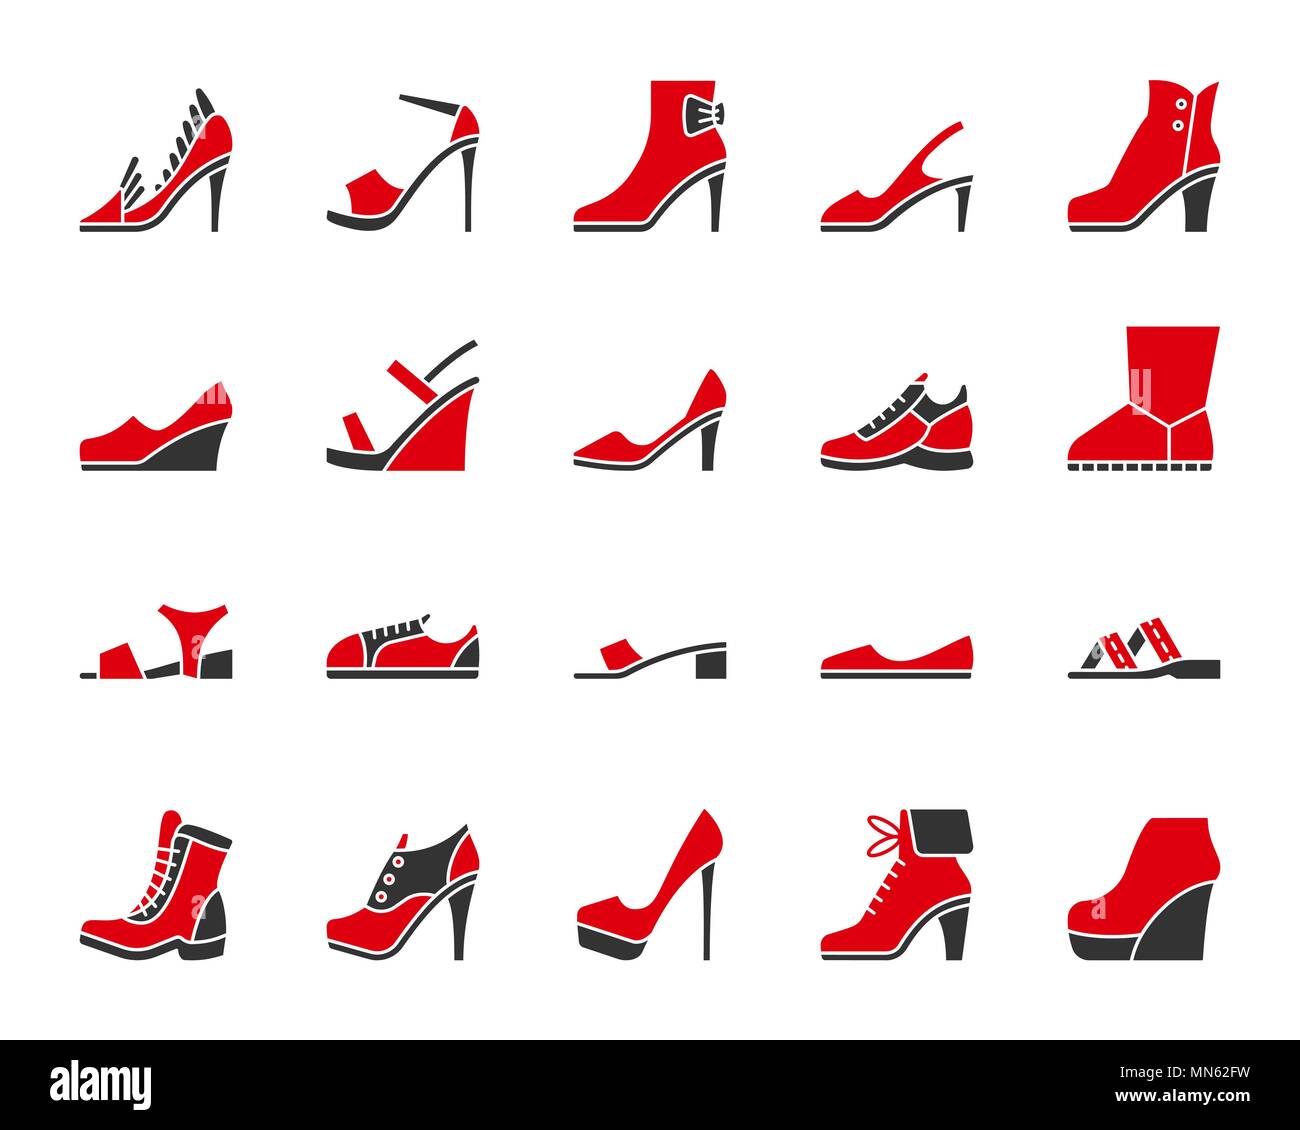 Frauen Schuhe silhouette Symbole gesetzt. Auf weißen Web sign Kit von  Schuhen isoliert. Schuhe Piktogramm Sammlung umfasst ugg, Pumpen, Boote.  Einfach zwei Farbe Stock-Vektorgrafik - Alamy